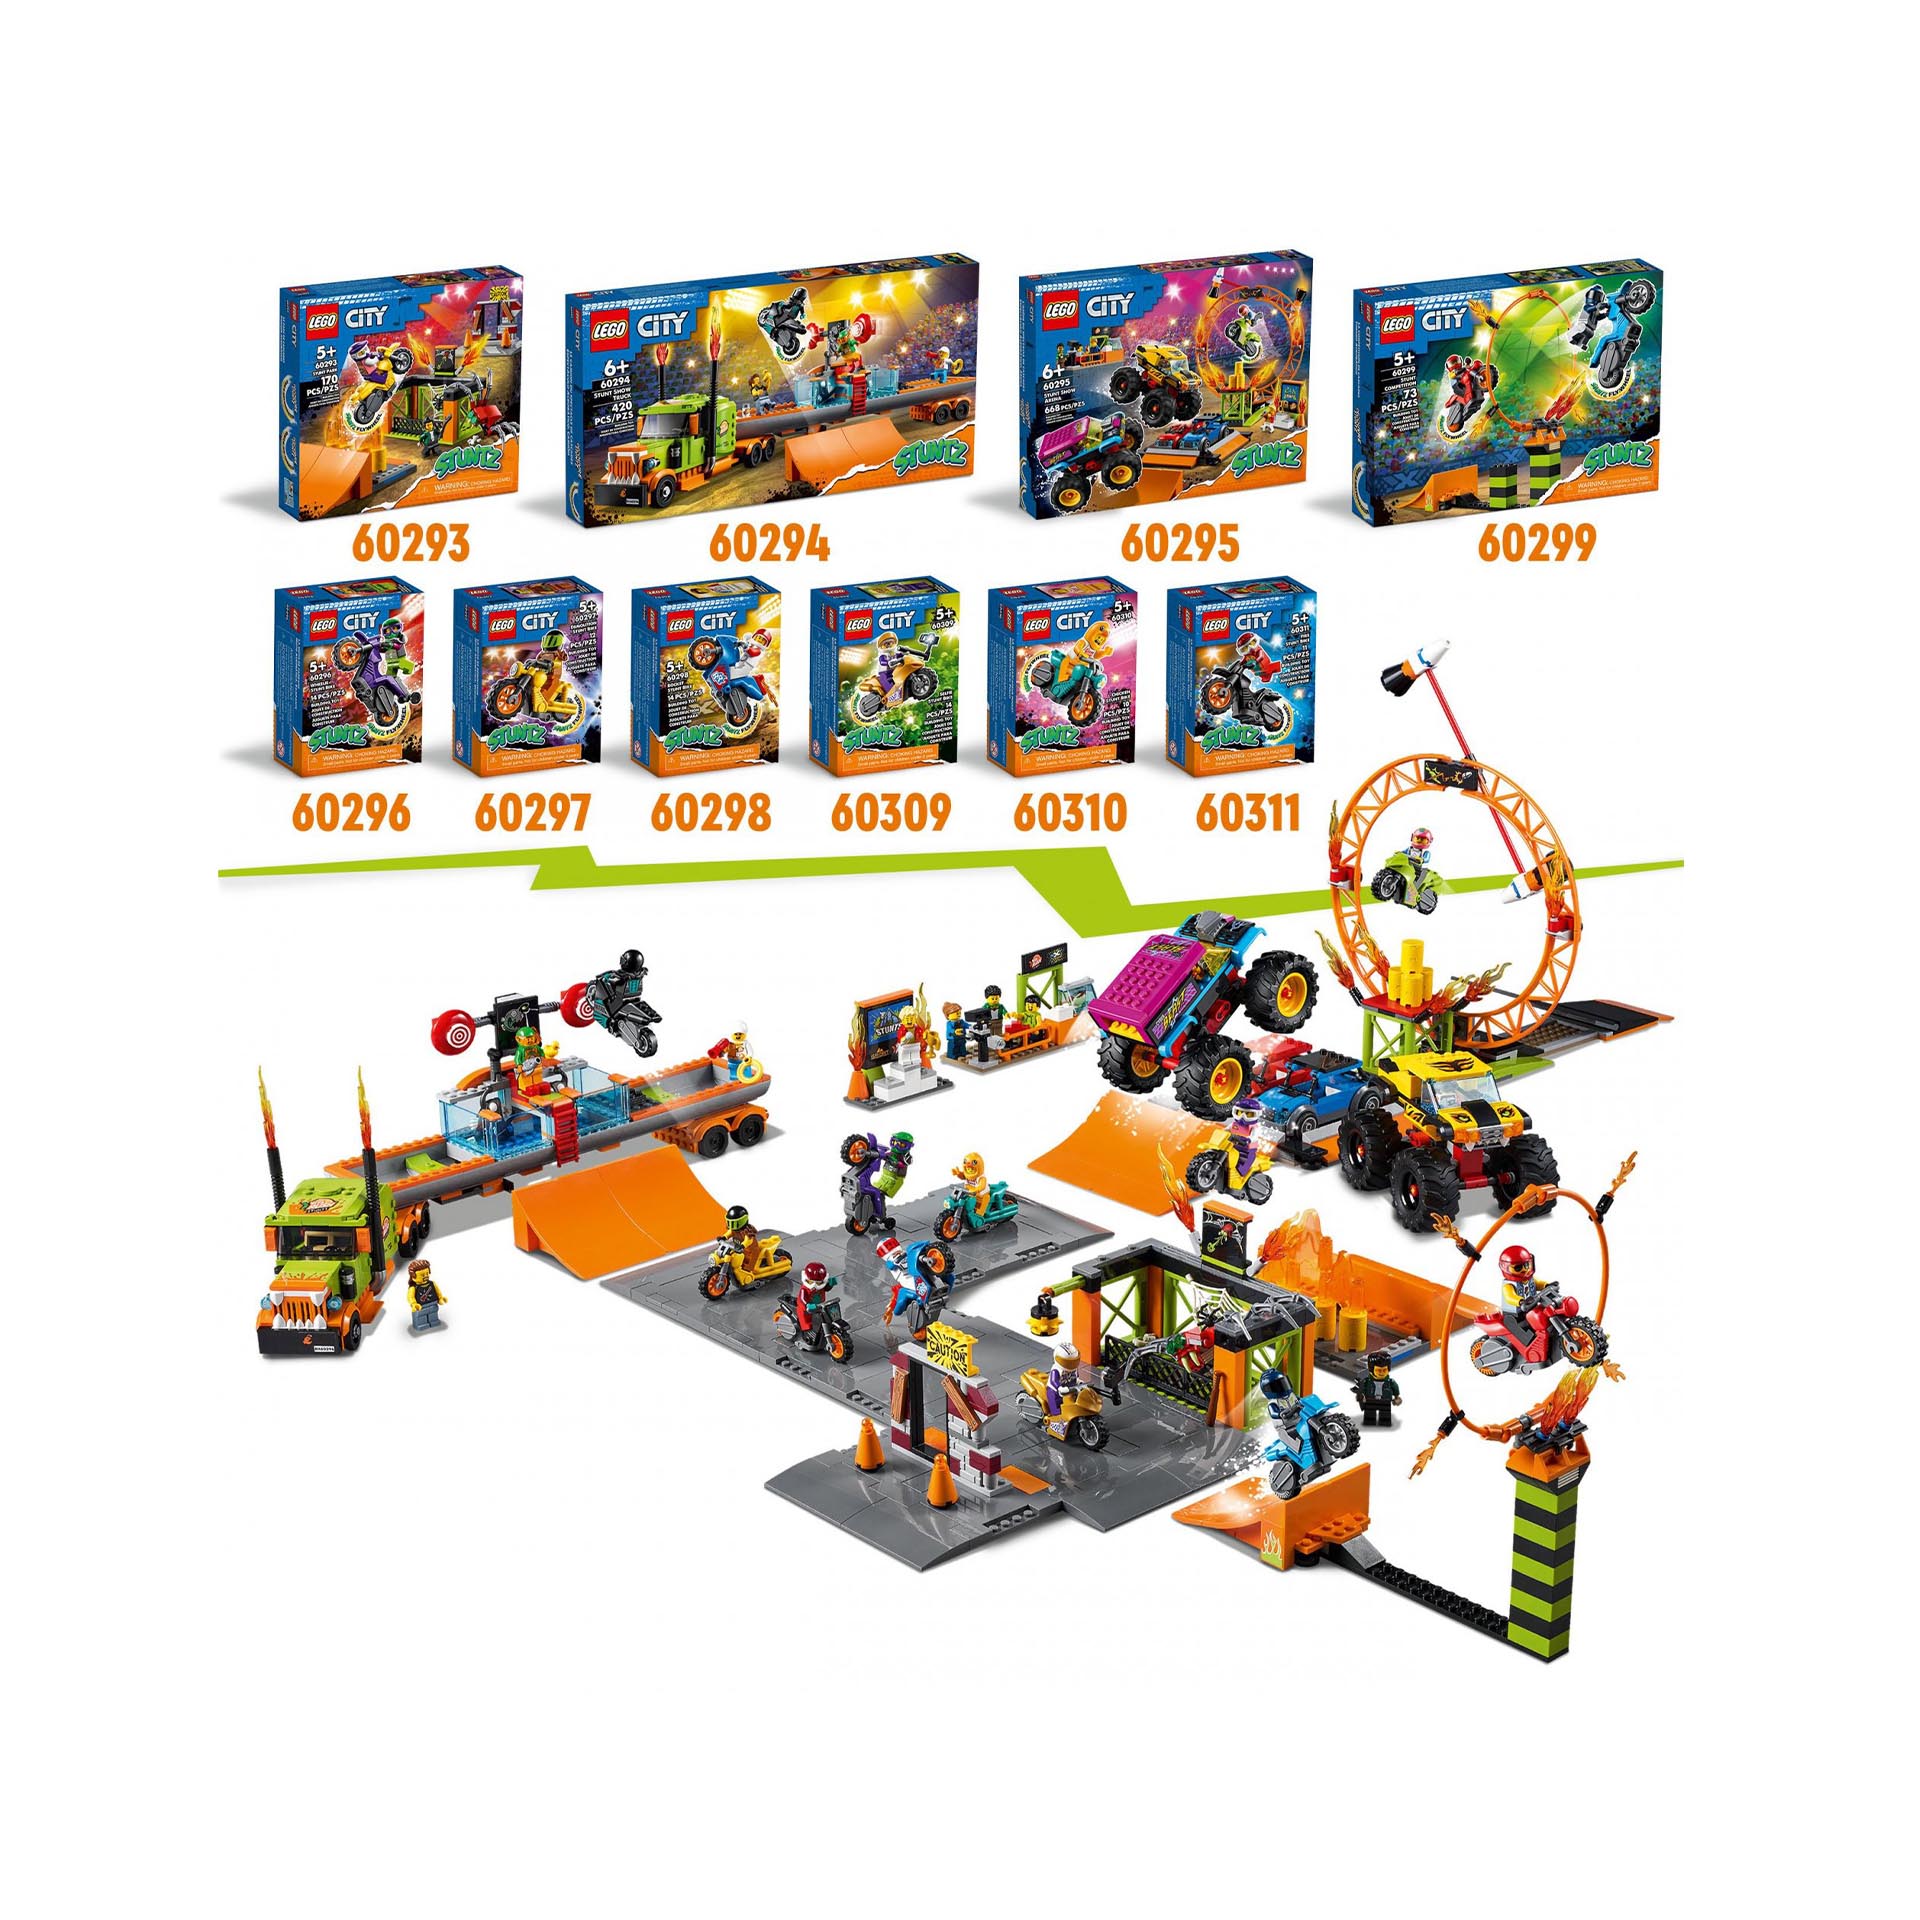 LEGO City Stuntz Competizione Acrobatica, Set con 2 Moto Giocattolo con Meccanis 60299, , large